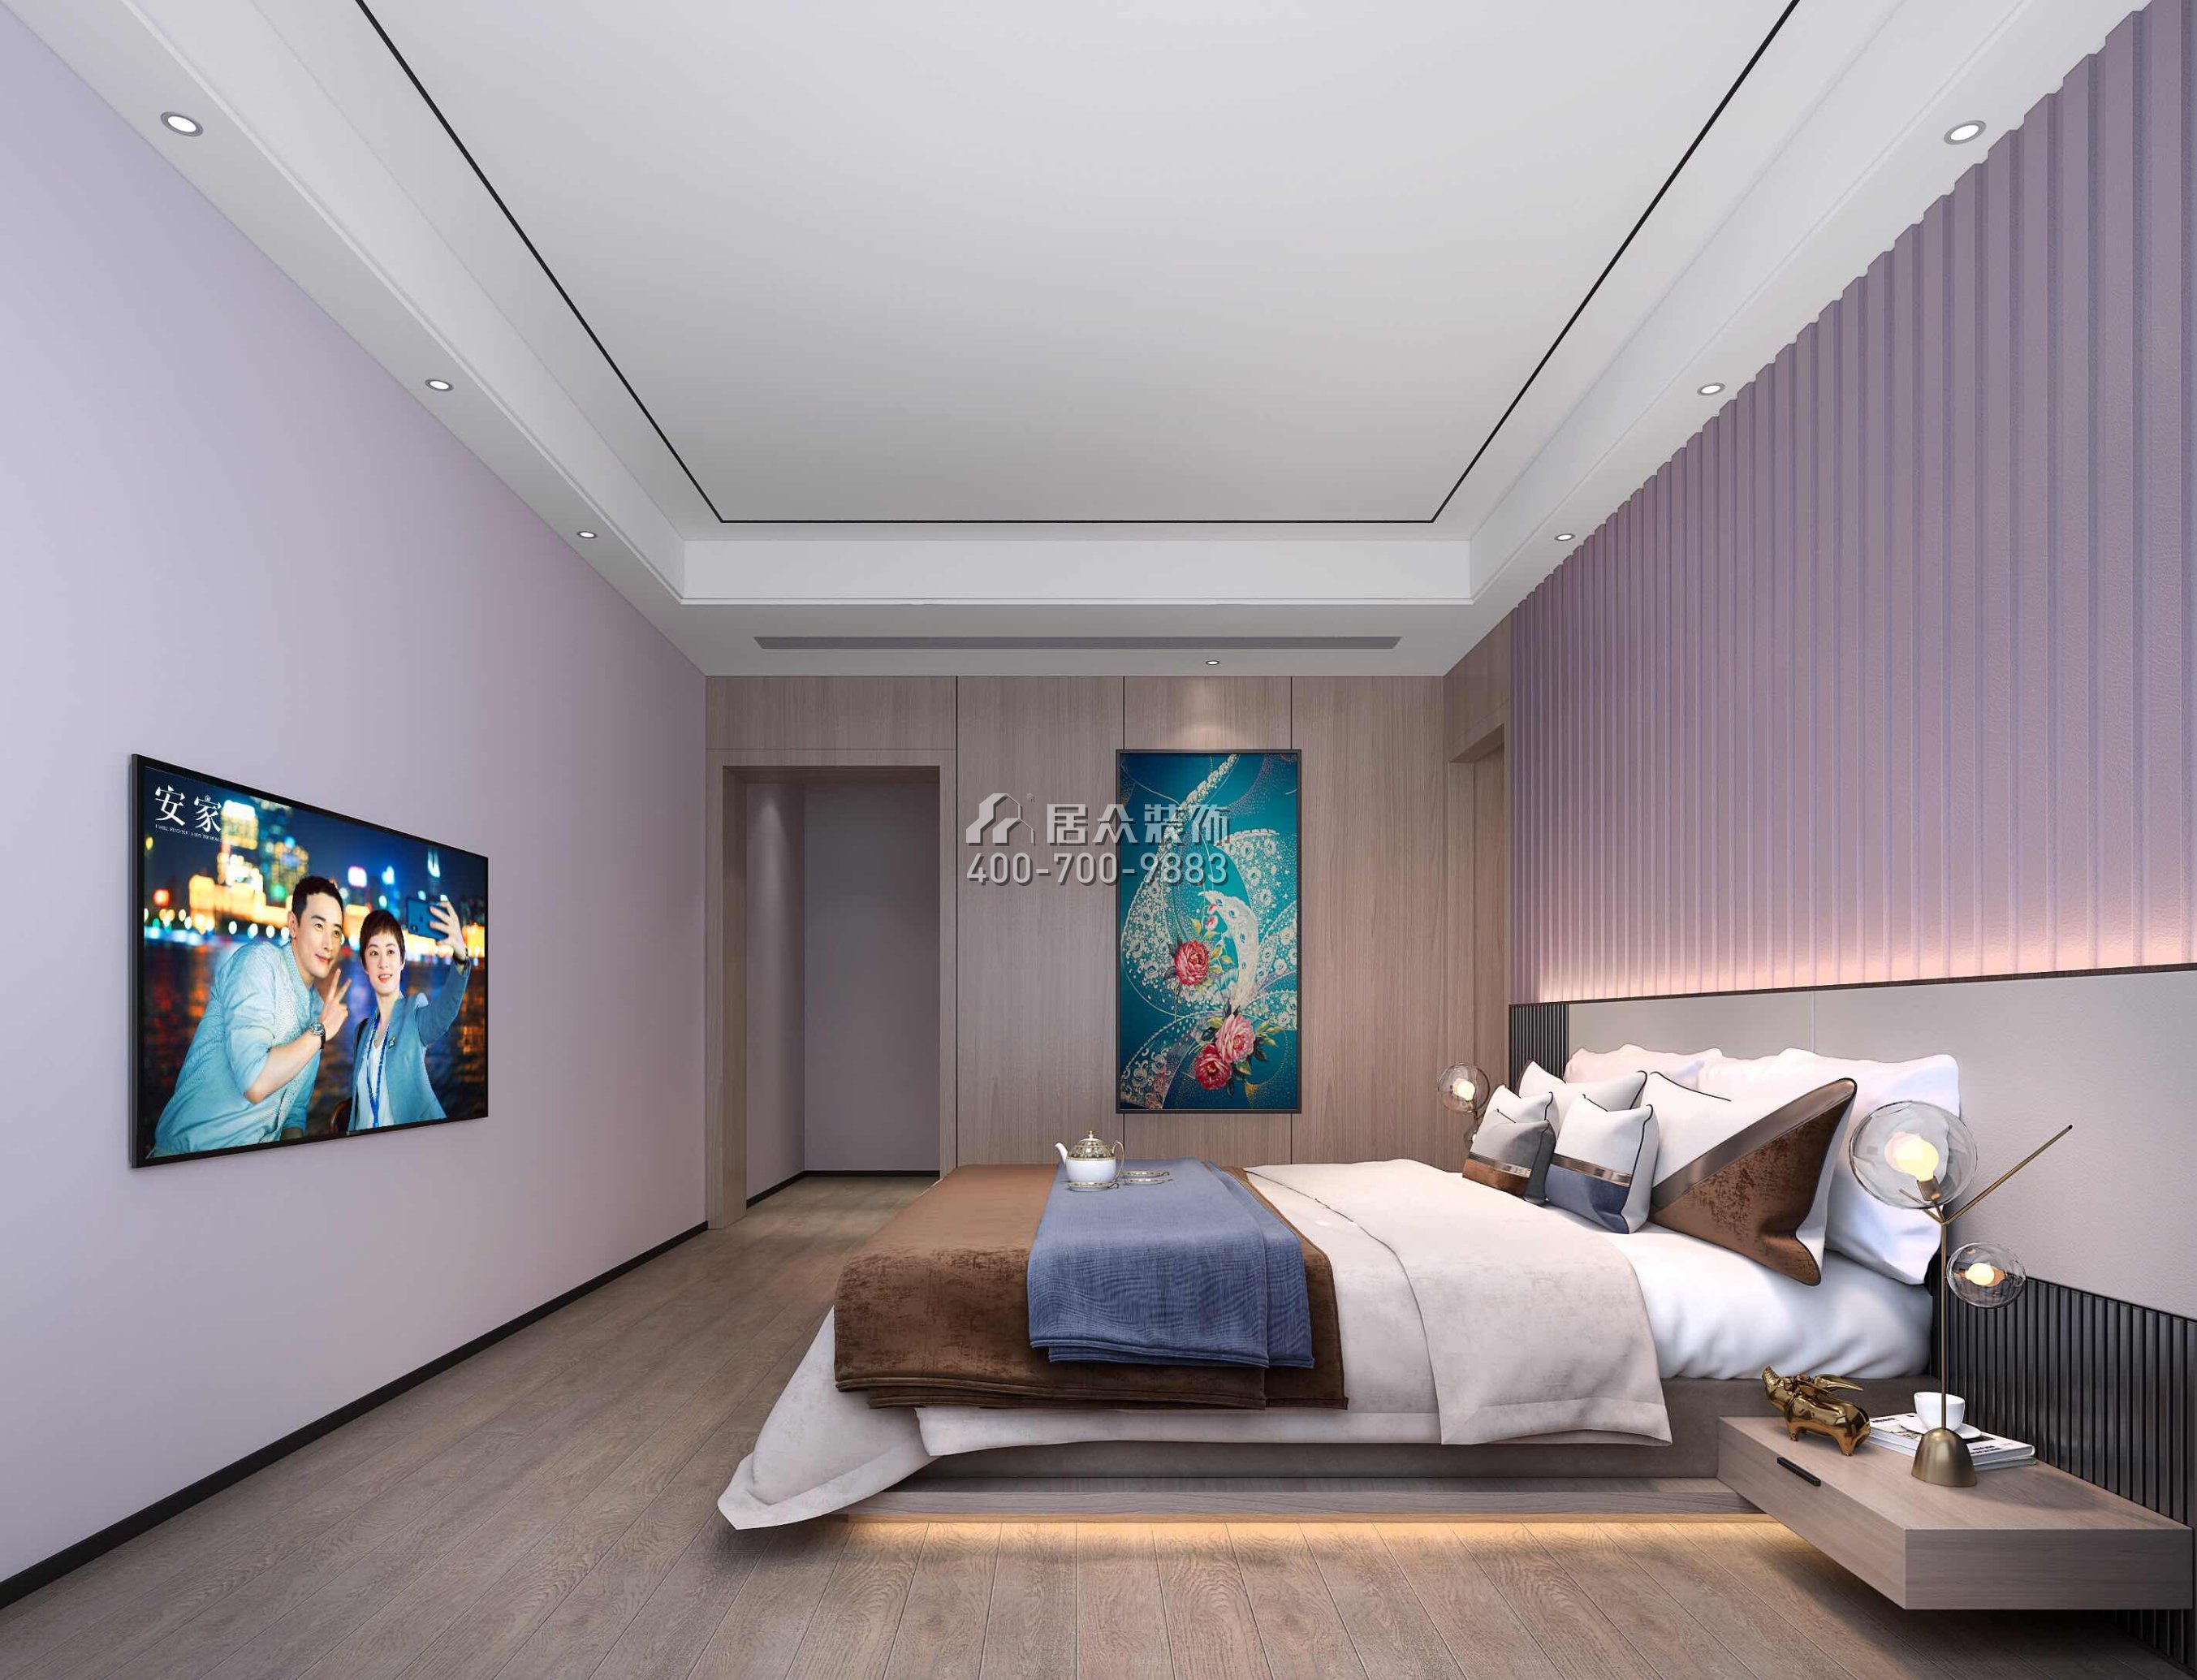 万科皇马郦宫241平方米现代简约风格平层户型卧室装修效果图